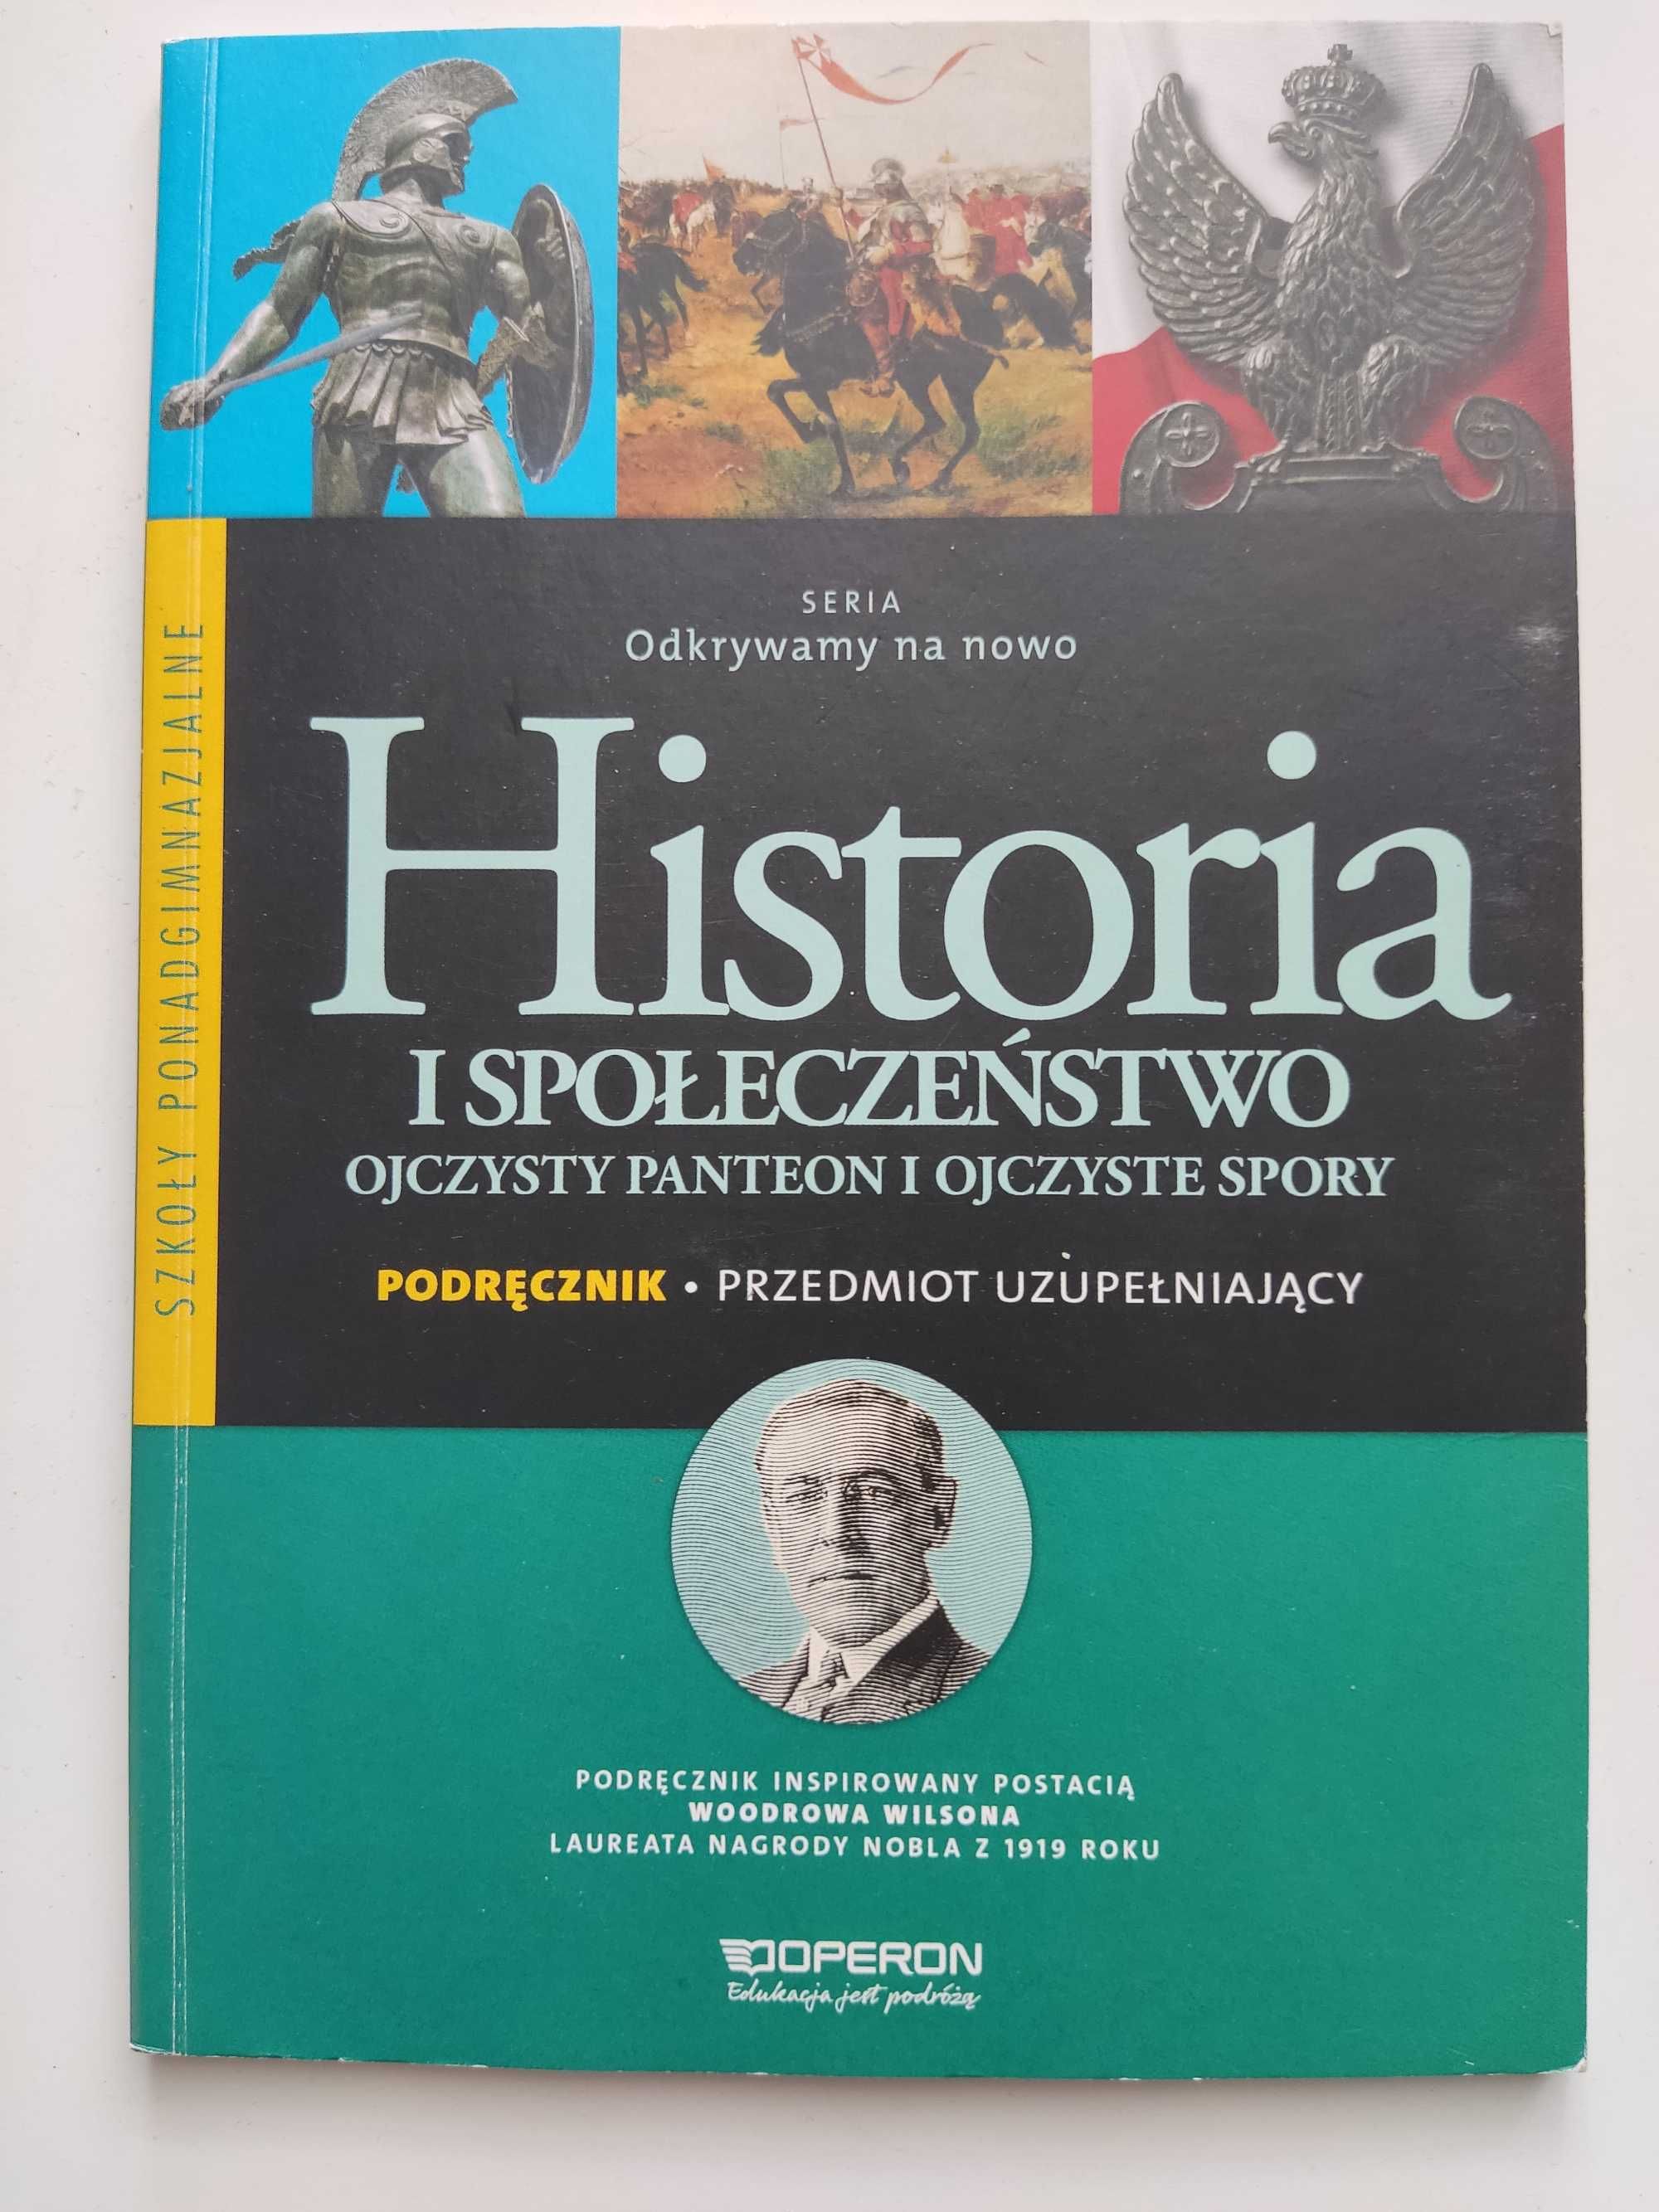 Podręcznik Historia i społeczeństwo (3 książki)